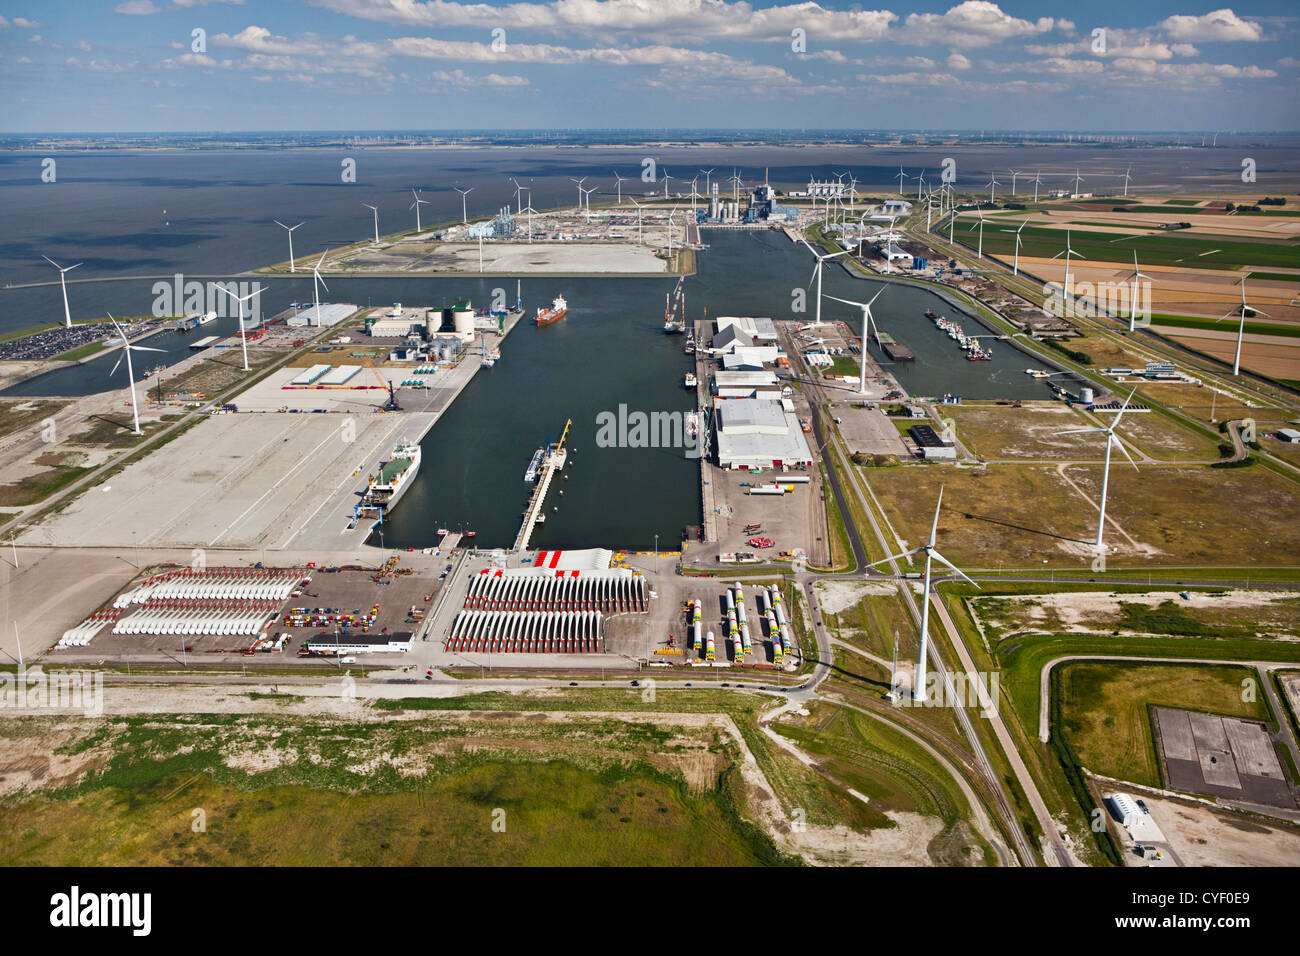 The Netherlands, Eemsmond, Port, harbor called Eemshaven. Aerial. Stock Photo